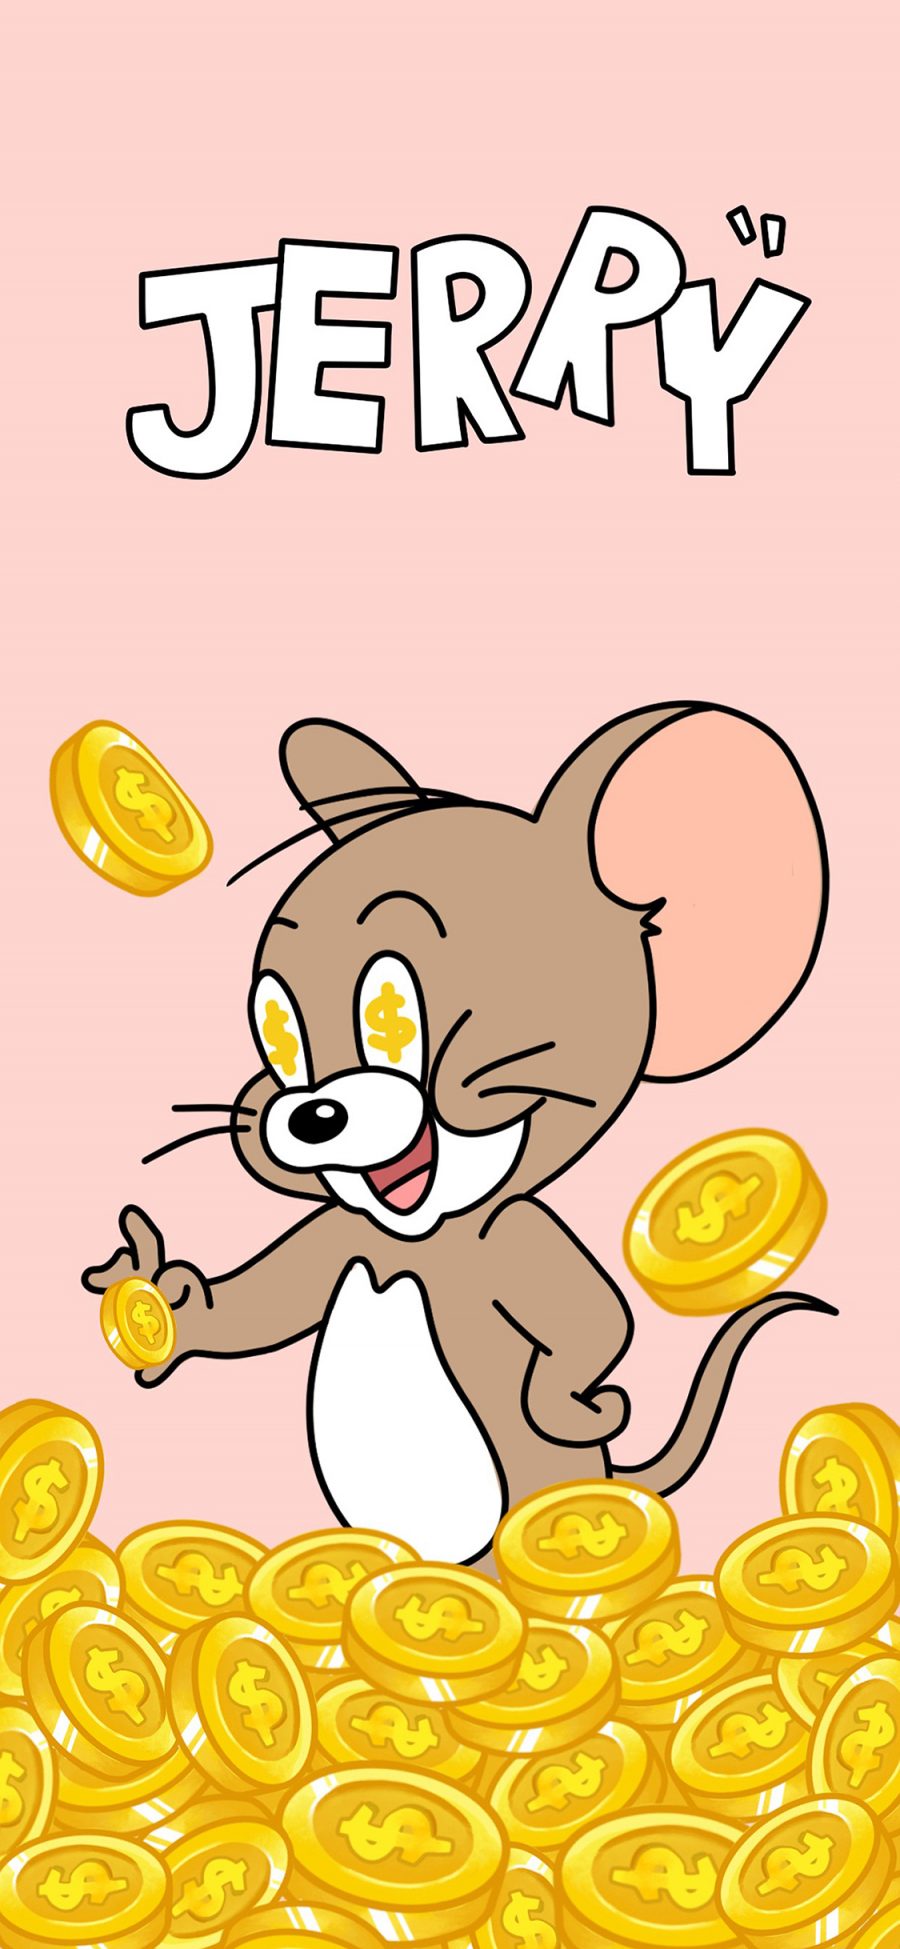 [2436×1125]可爱 金币 猫和老鼠 Jerry 杰瑞 苹果手机动漫壁纸图片